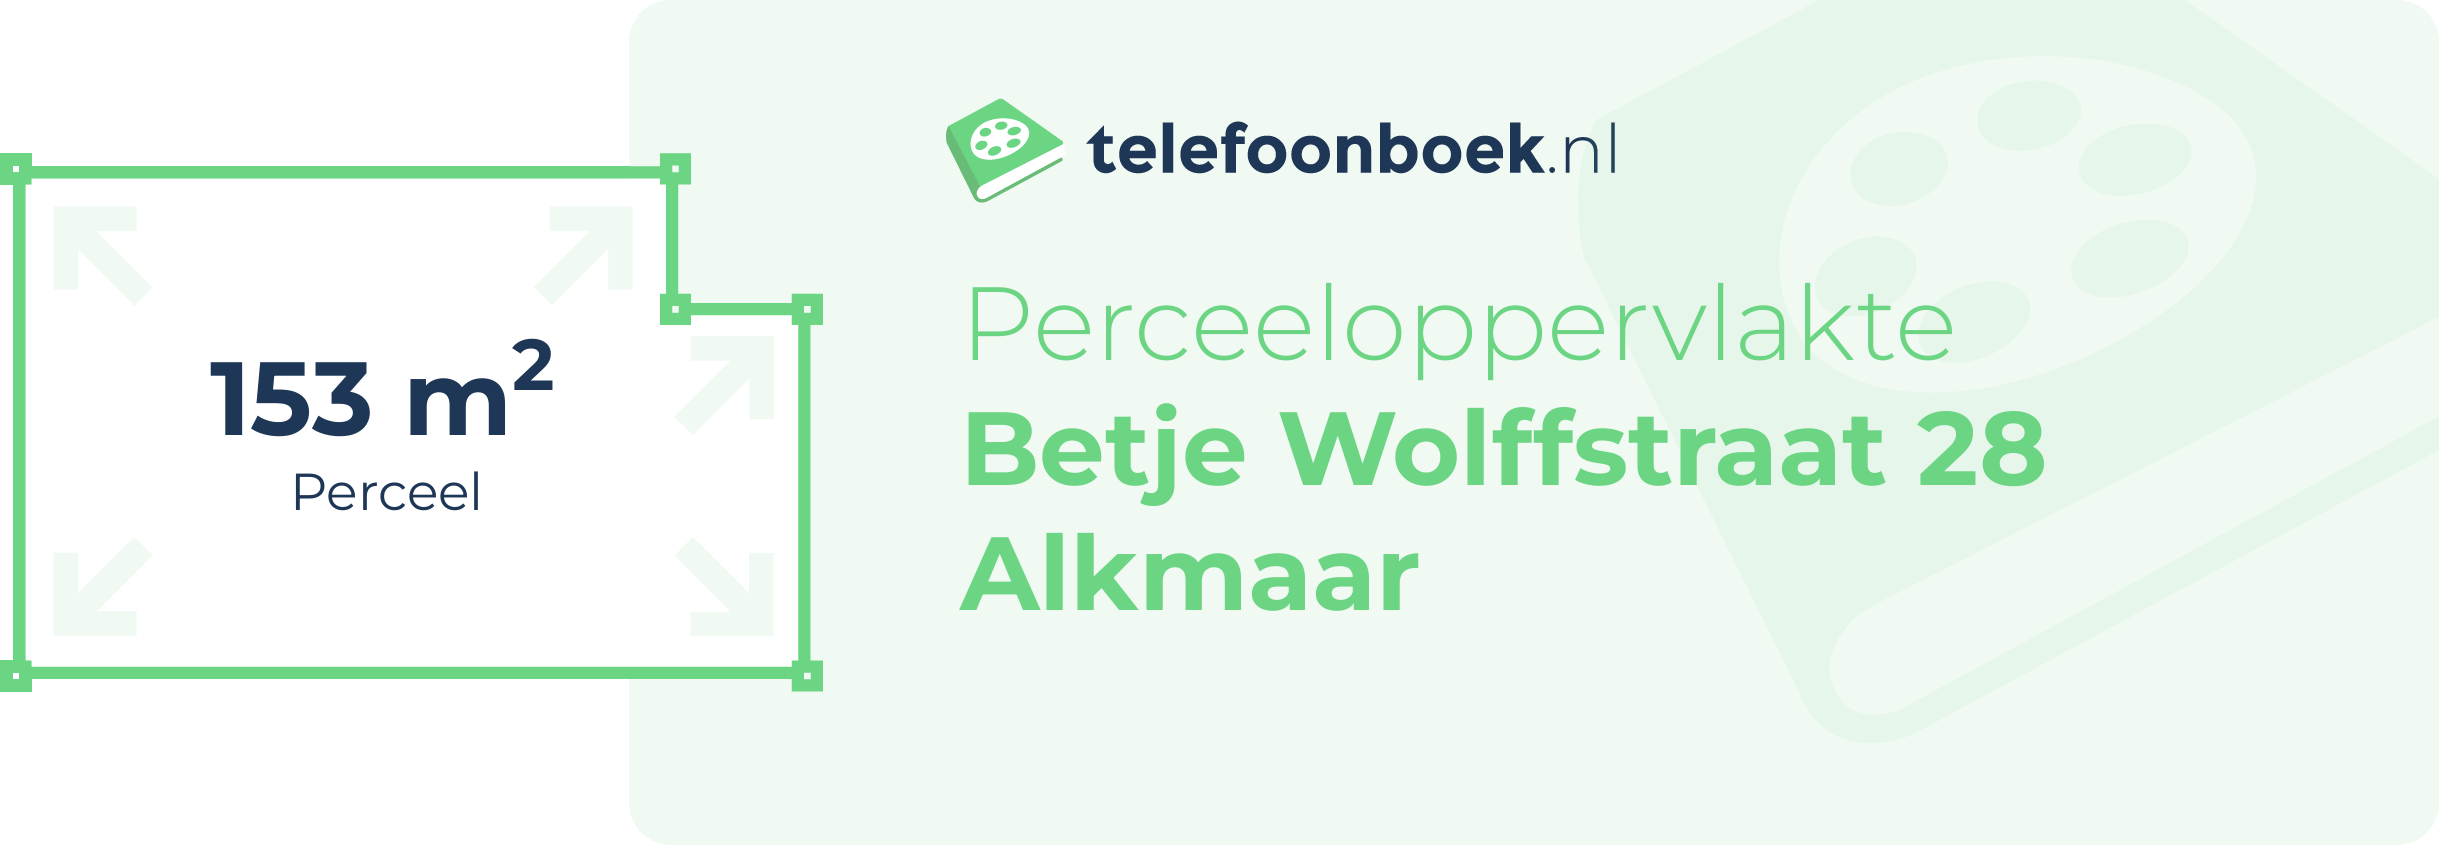 Perceeloppervlakte Betje Wolffstraat 28 Alkmaar